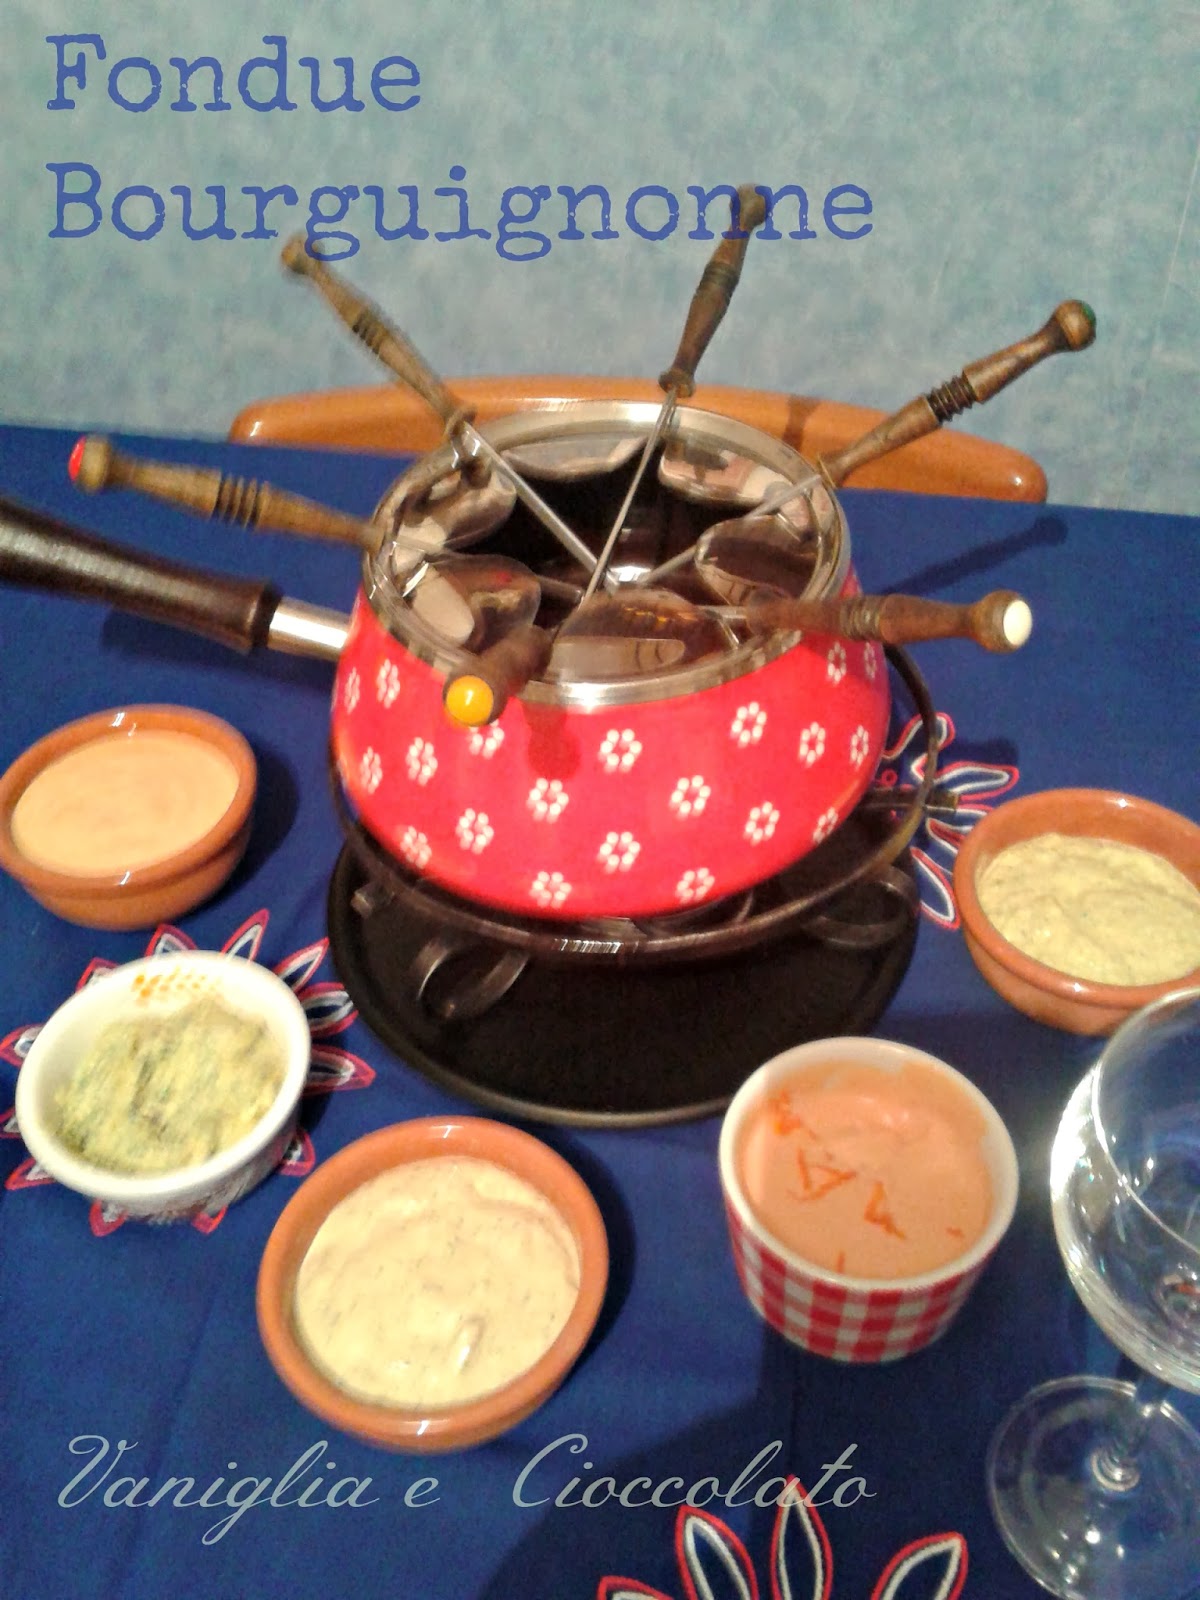 vaniglia e cioccolato: Una serata con la fondue bourguignonne